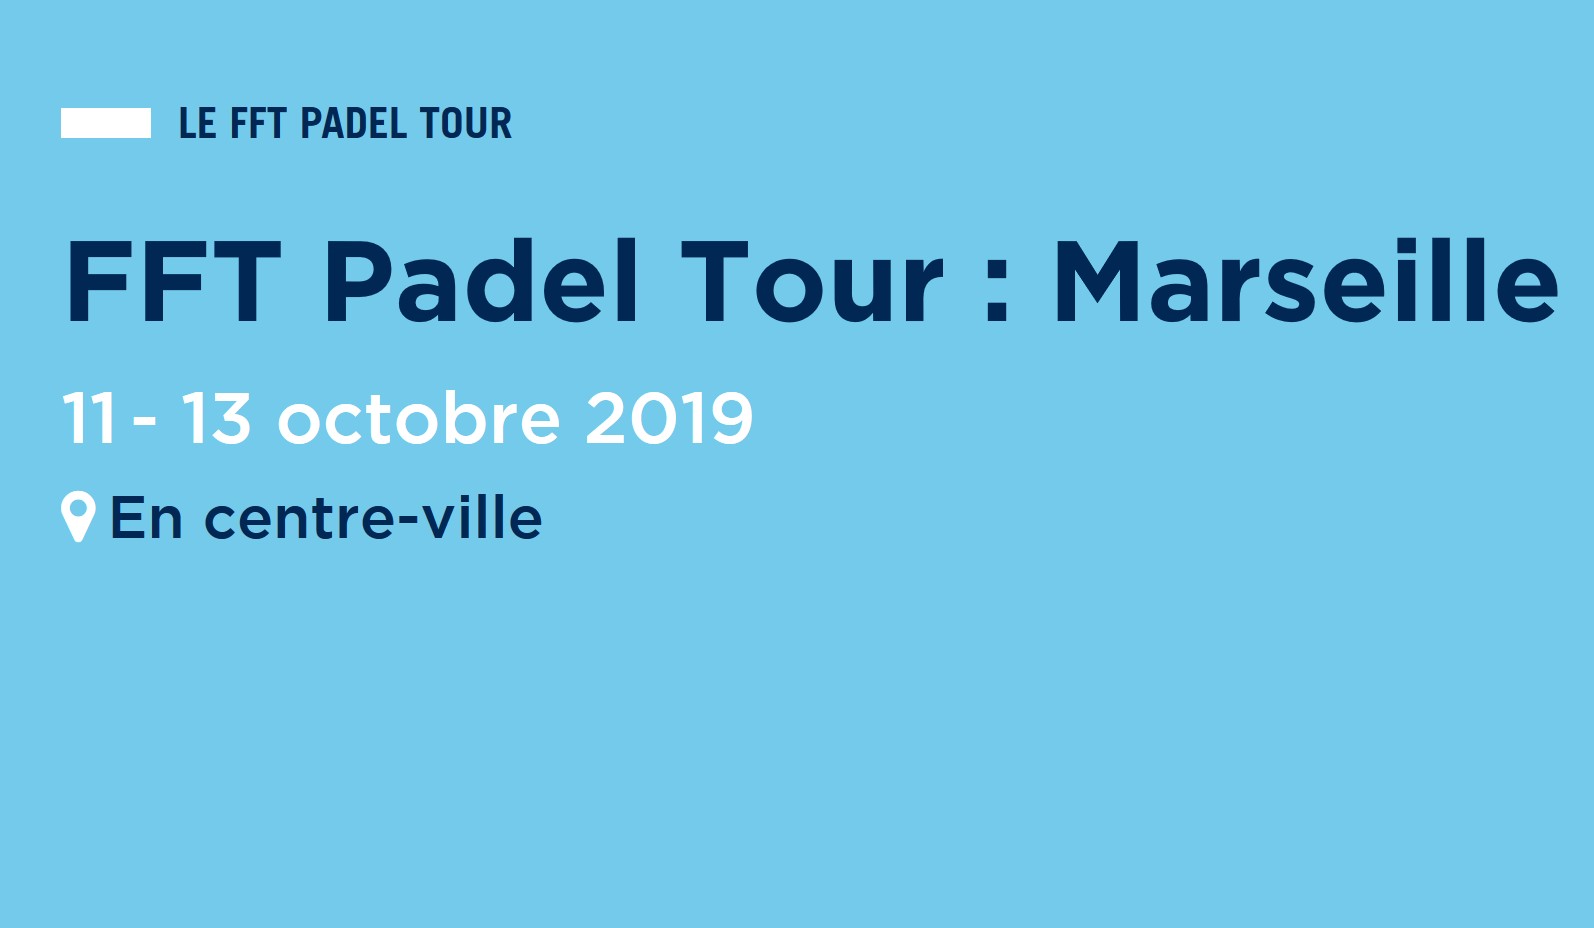 FFT Padel Tour Marseilles – Dates